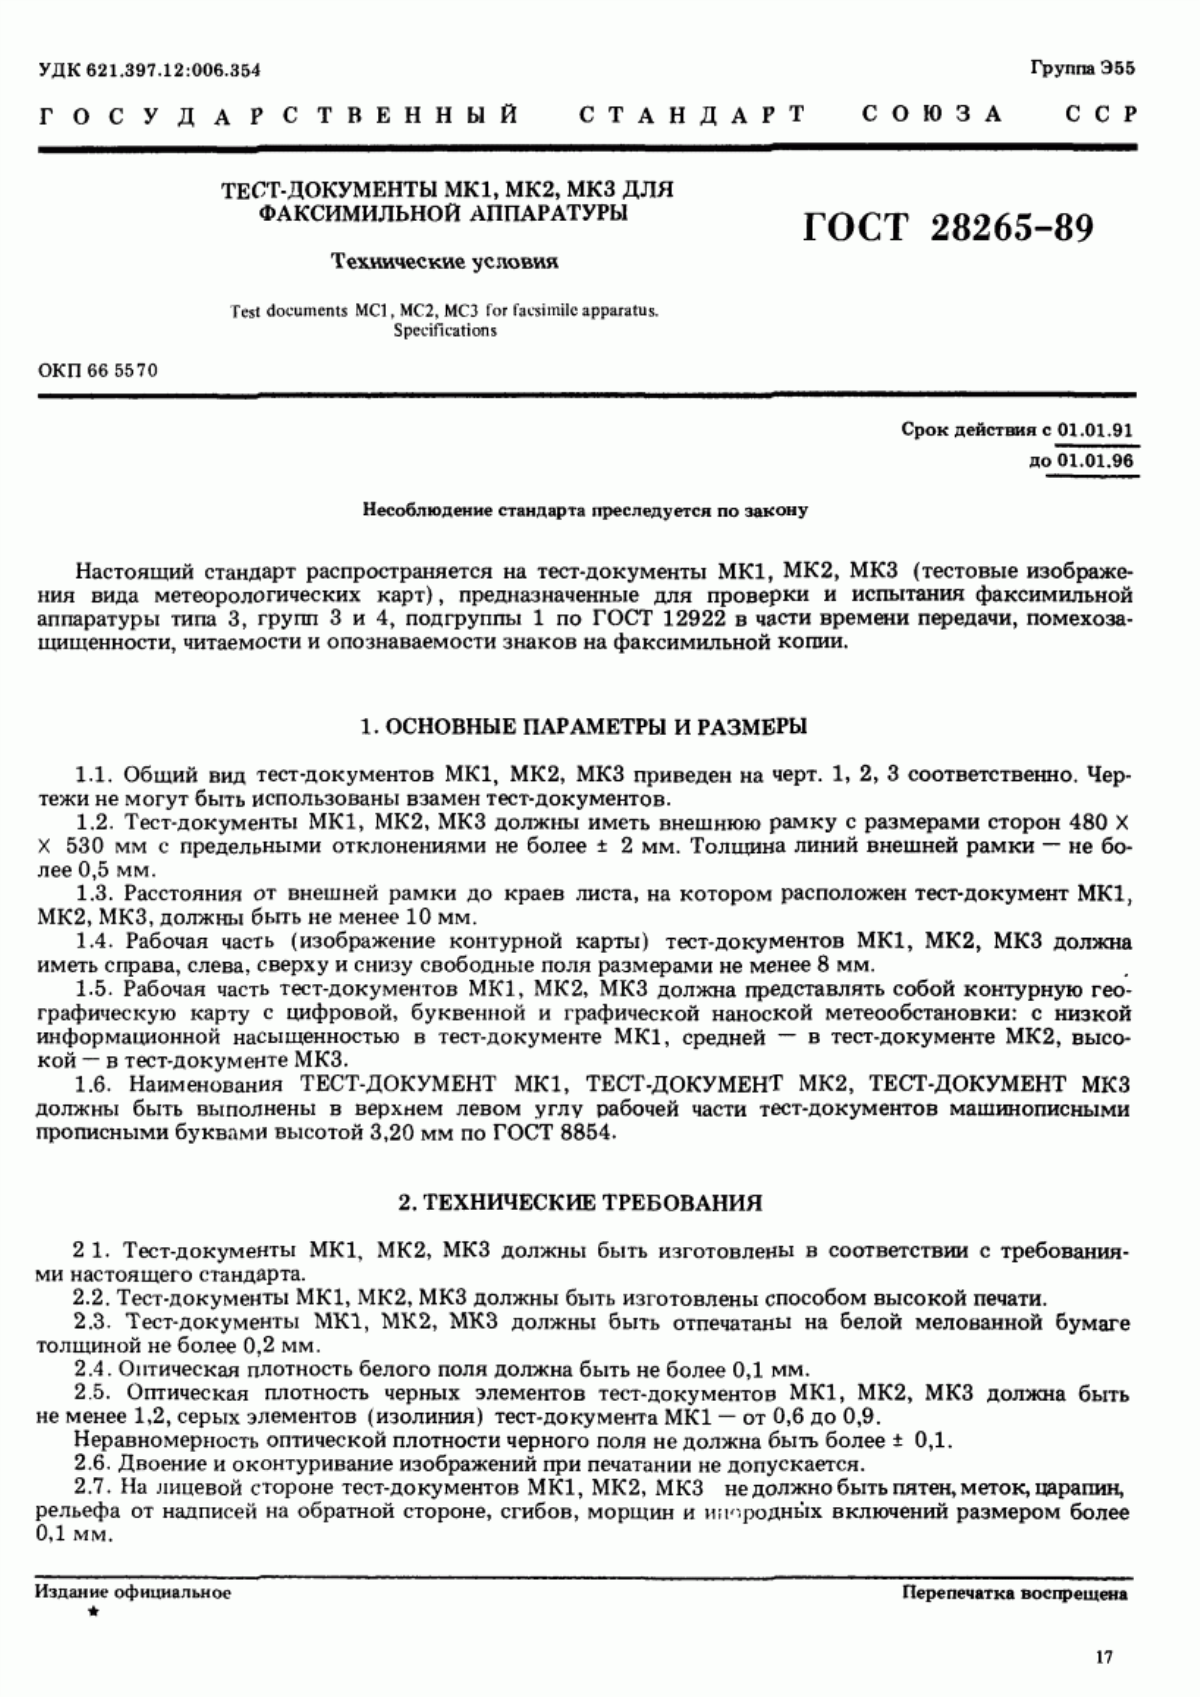 ГОСТ 28265-89 Тест-документы МК1, МК2, МК3 для факсимильной аппаратуры. Технические условия